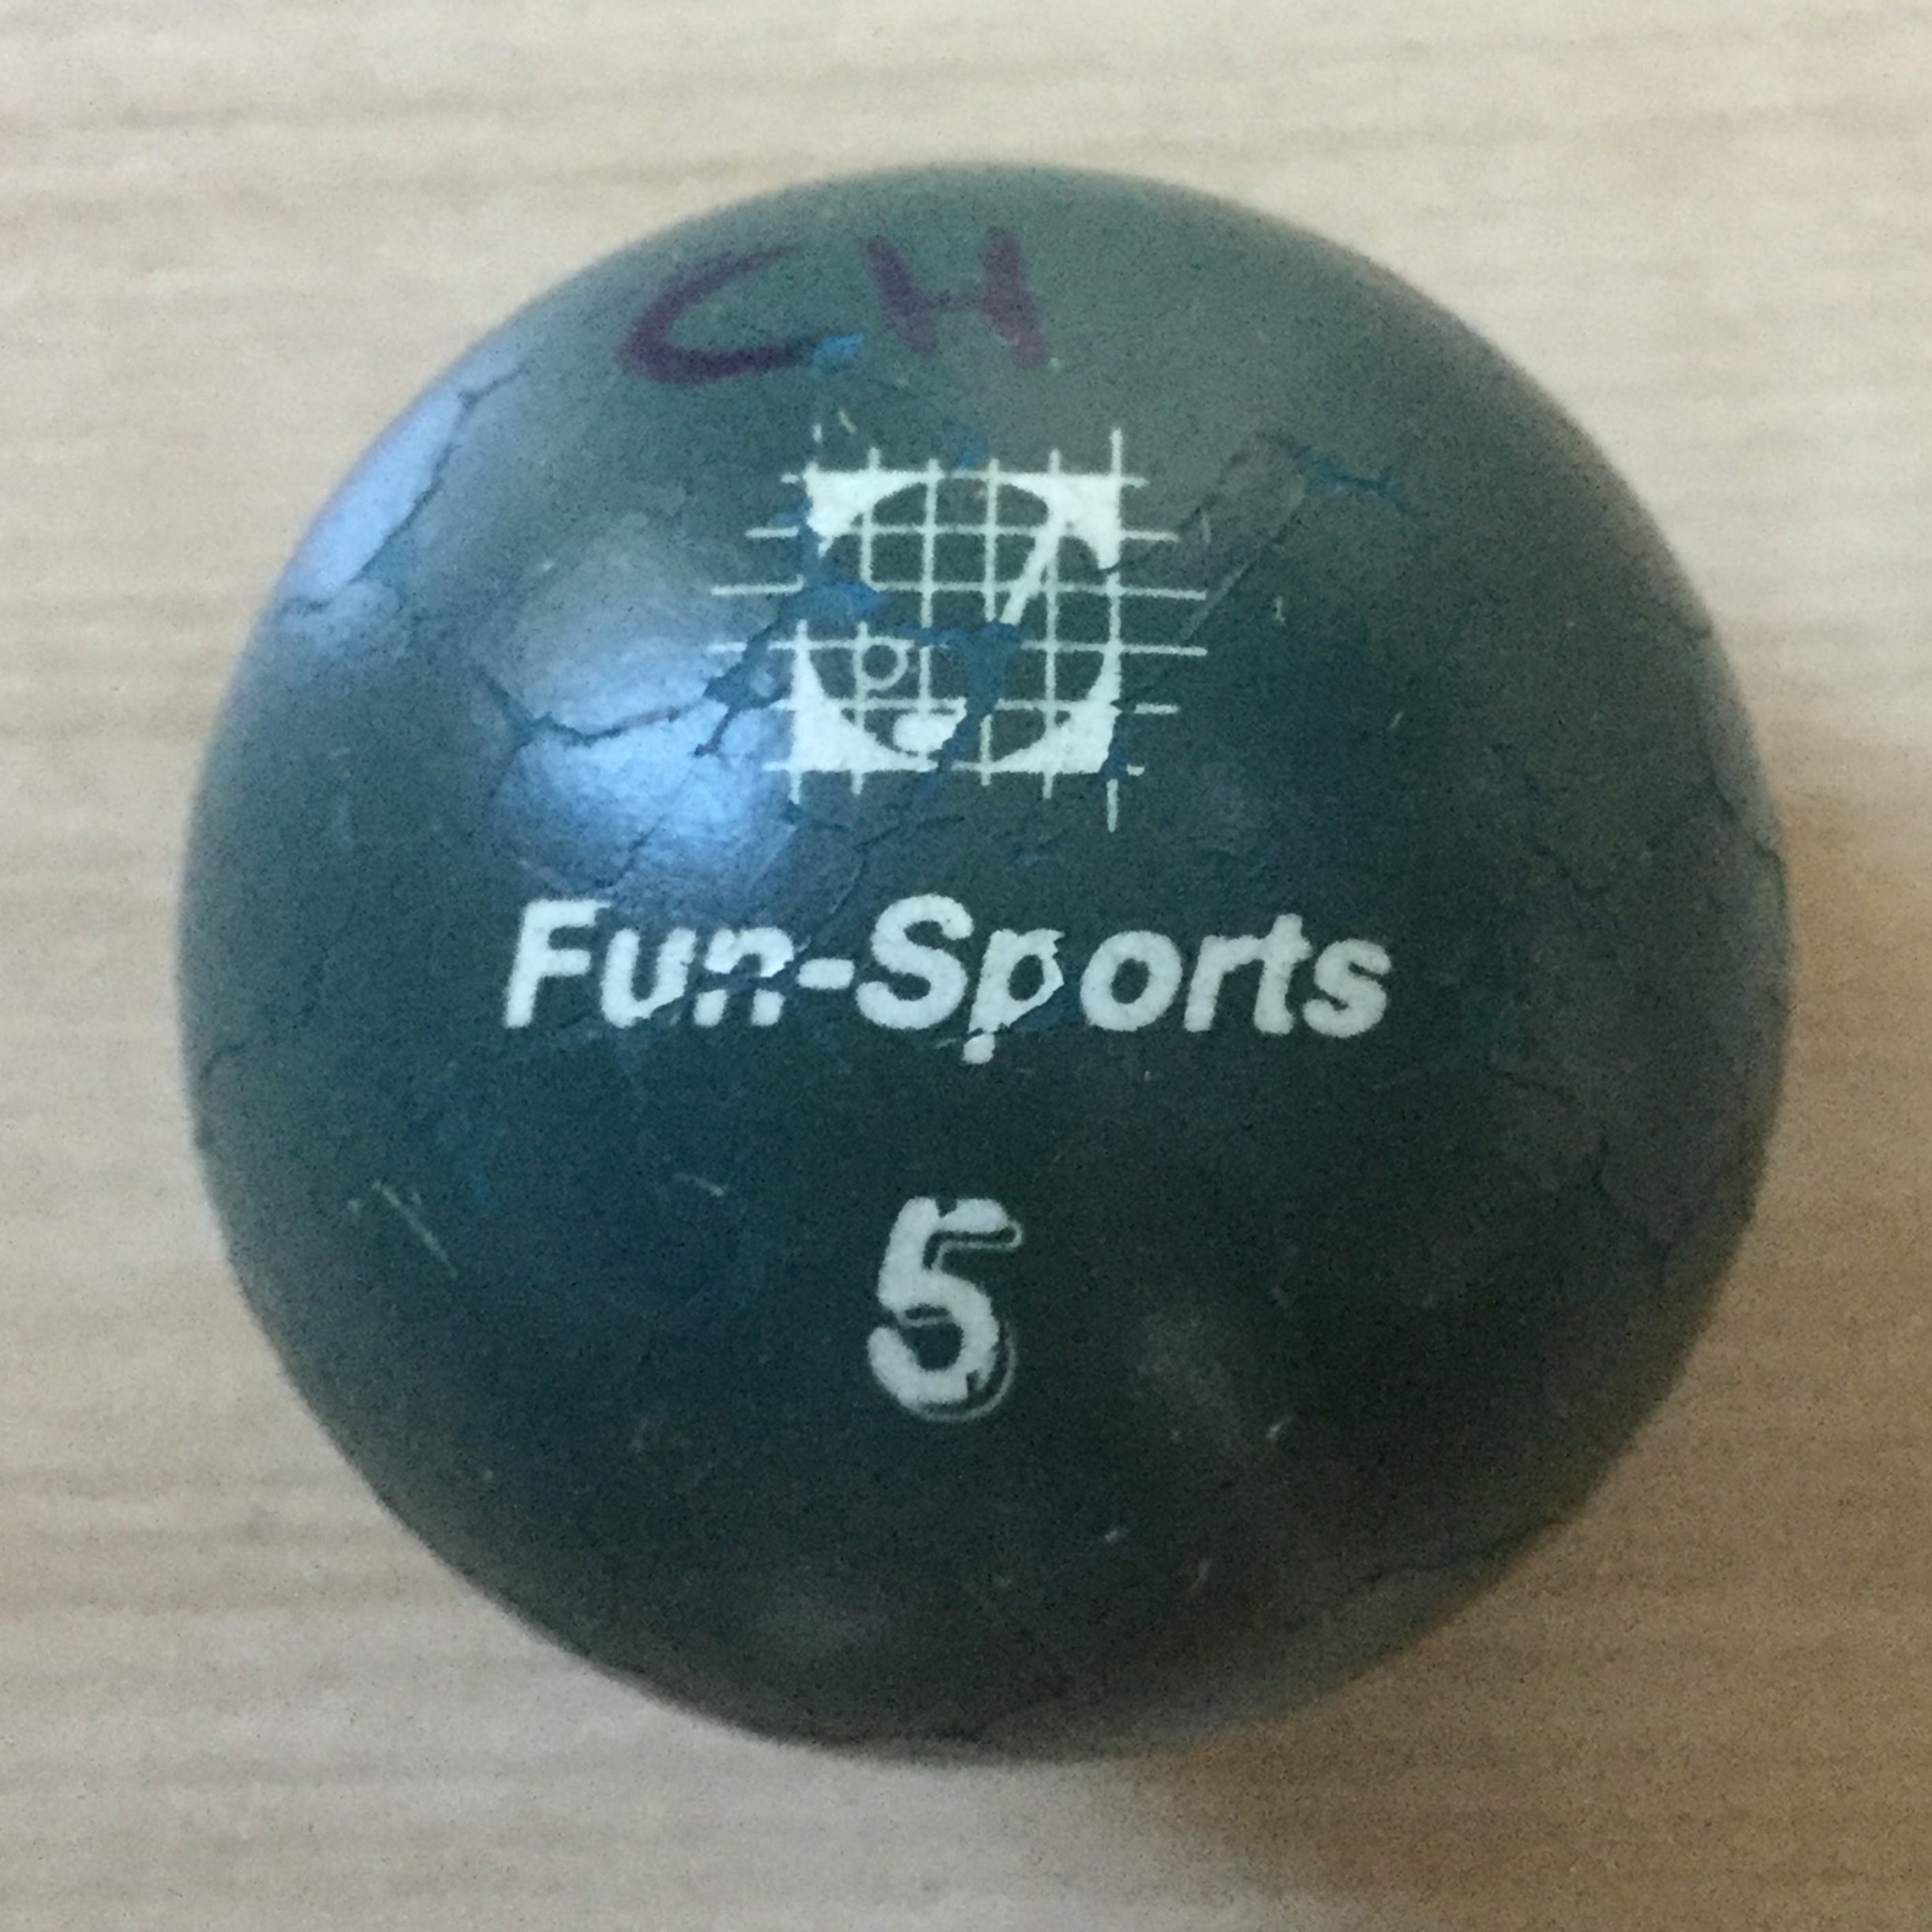 Fun-Sports 5